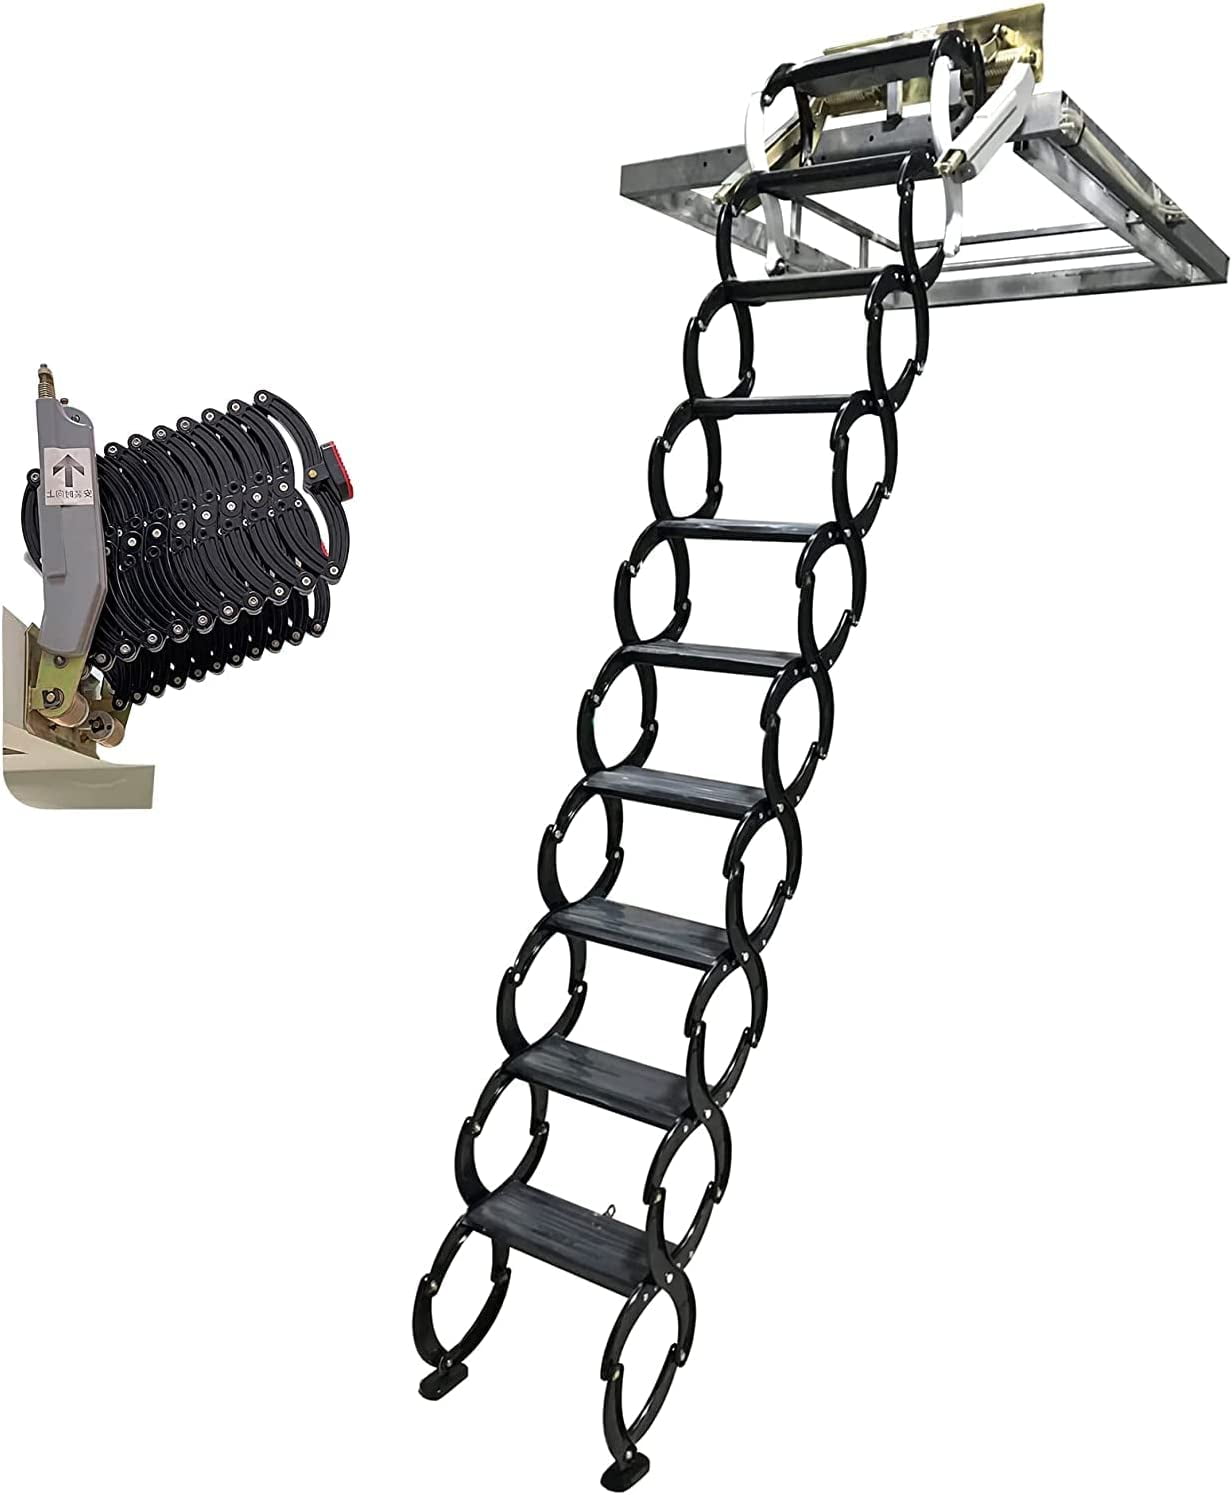 Eqcotwea Attic Loft Ladder Narrow Wall Mounted Aluminum Magnesium Alloy